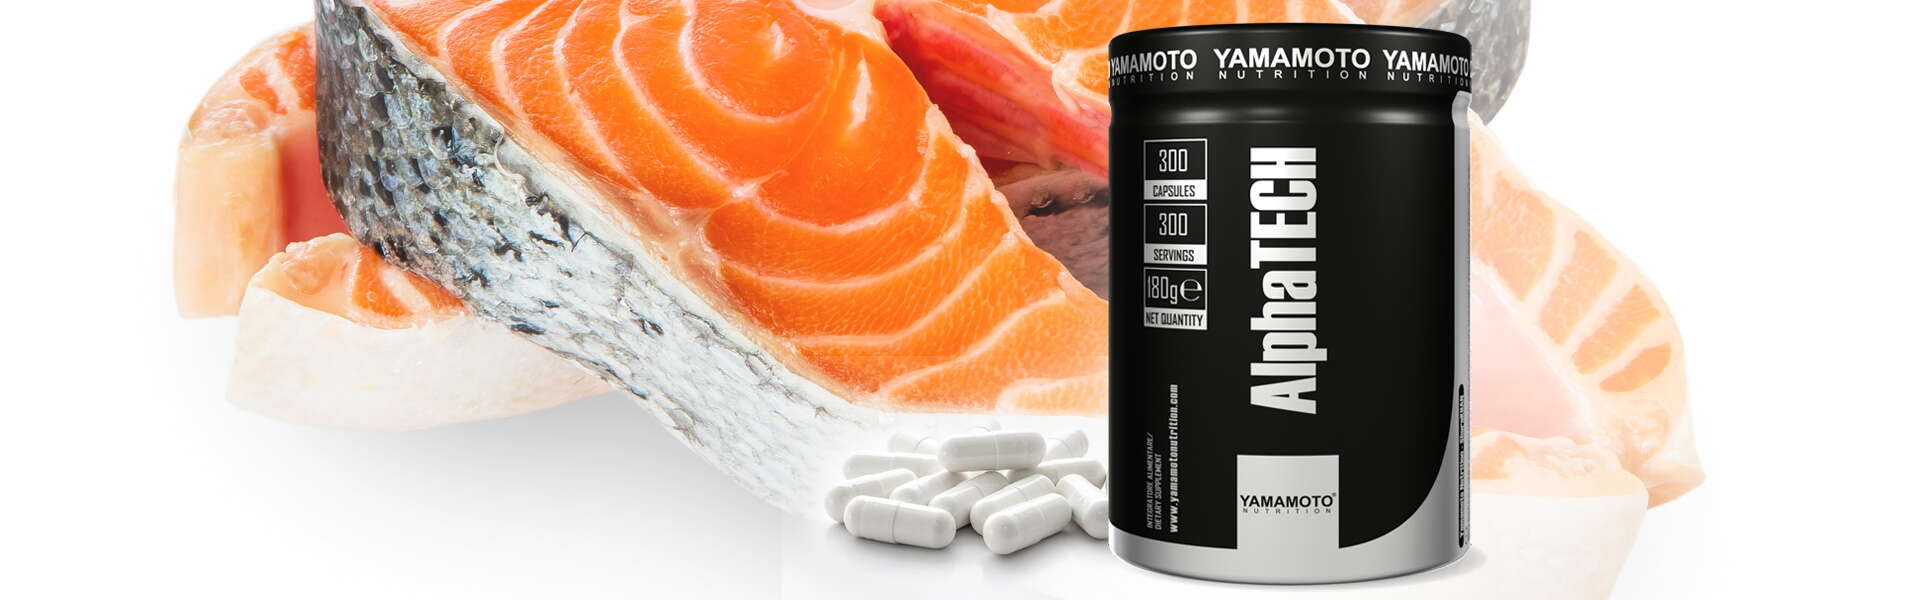 L'idrolizzato proteico del salmone: nutrimento per i muscoli